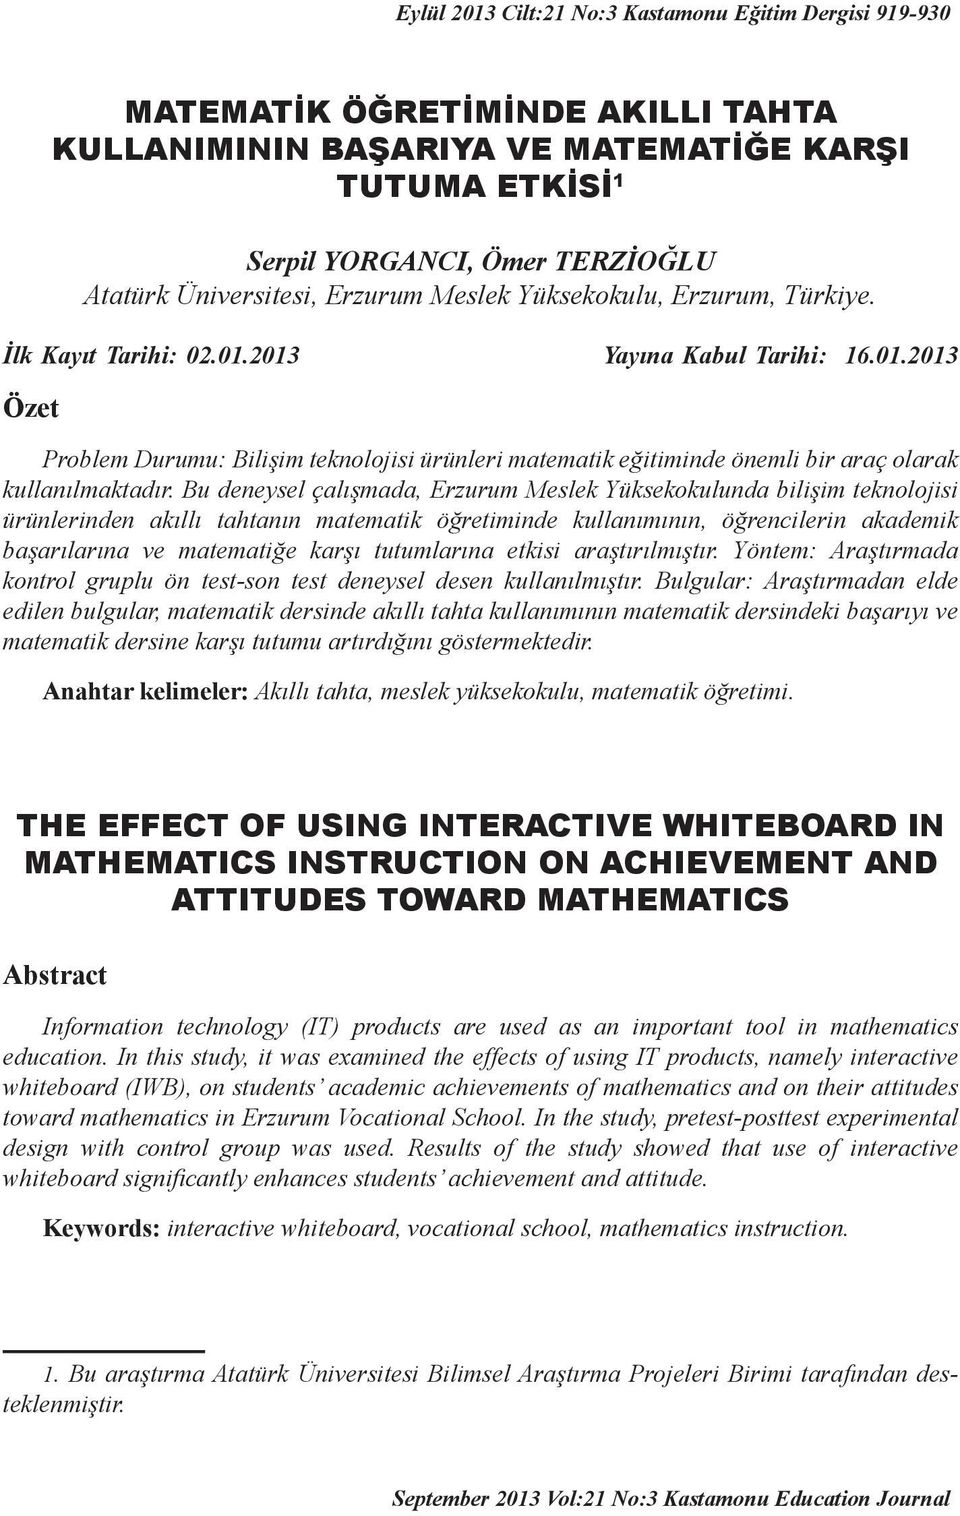 Bu deneysel çalışmada, Erzurum Meslek Yüksekokulunda bilişim teknolojisi ürünlerinden akıllı tahtanın matematik öğretiminde kullanımının, öğrencilerin akademik başarılarına ve matematiğe karşı